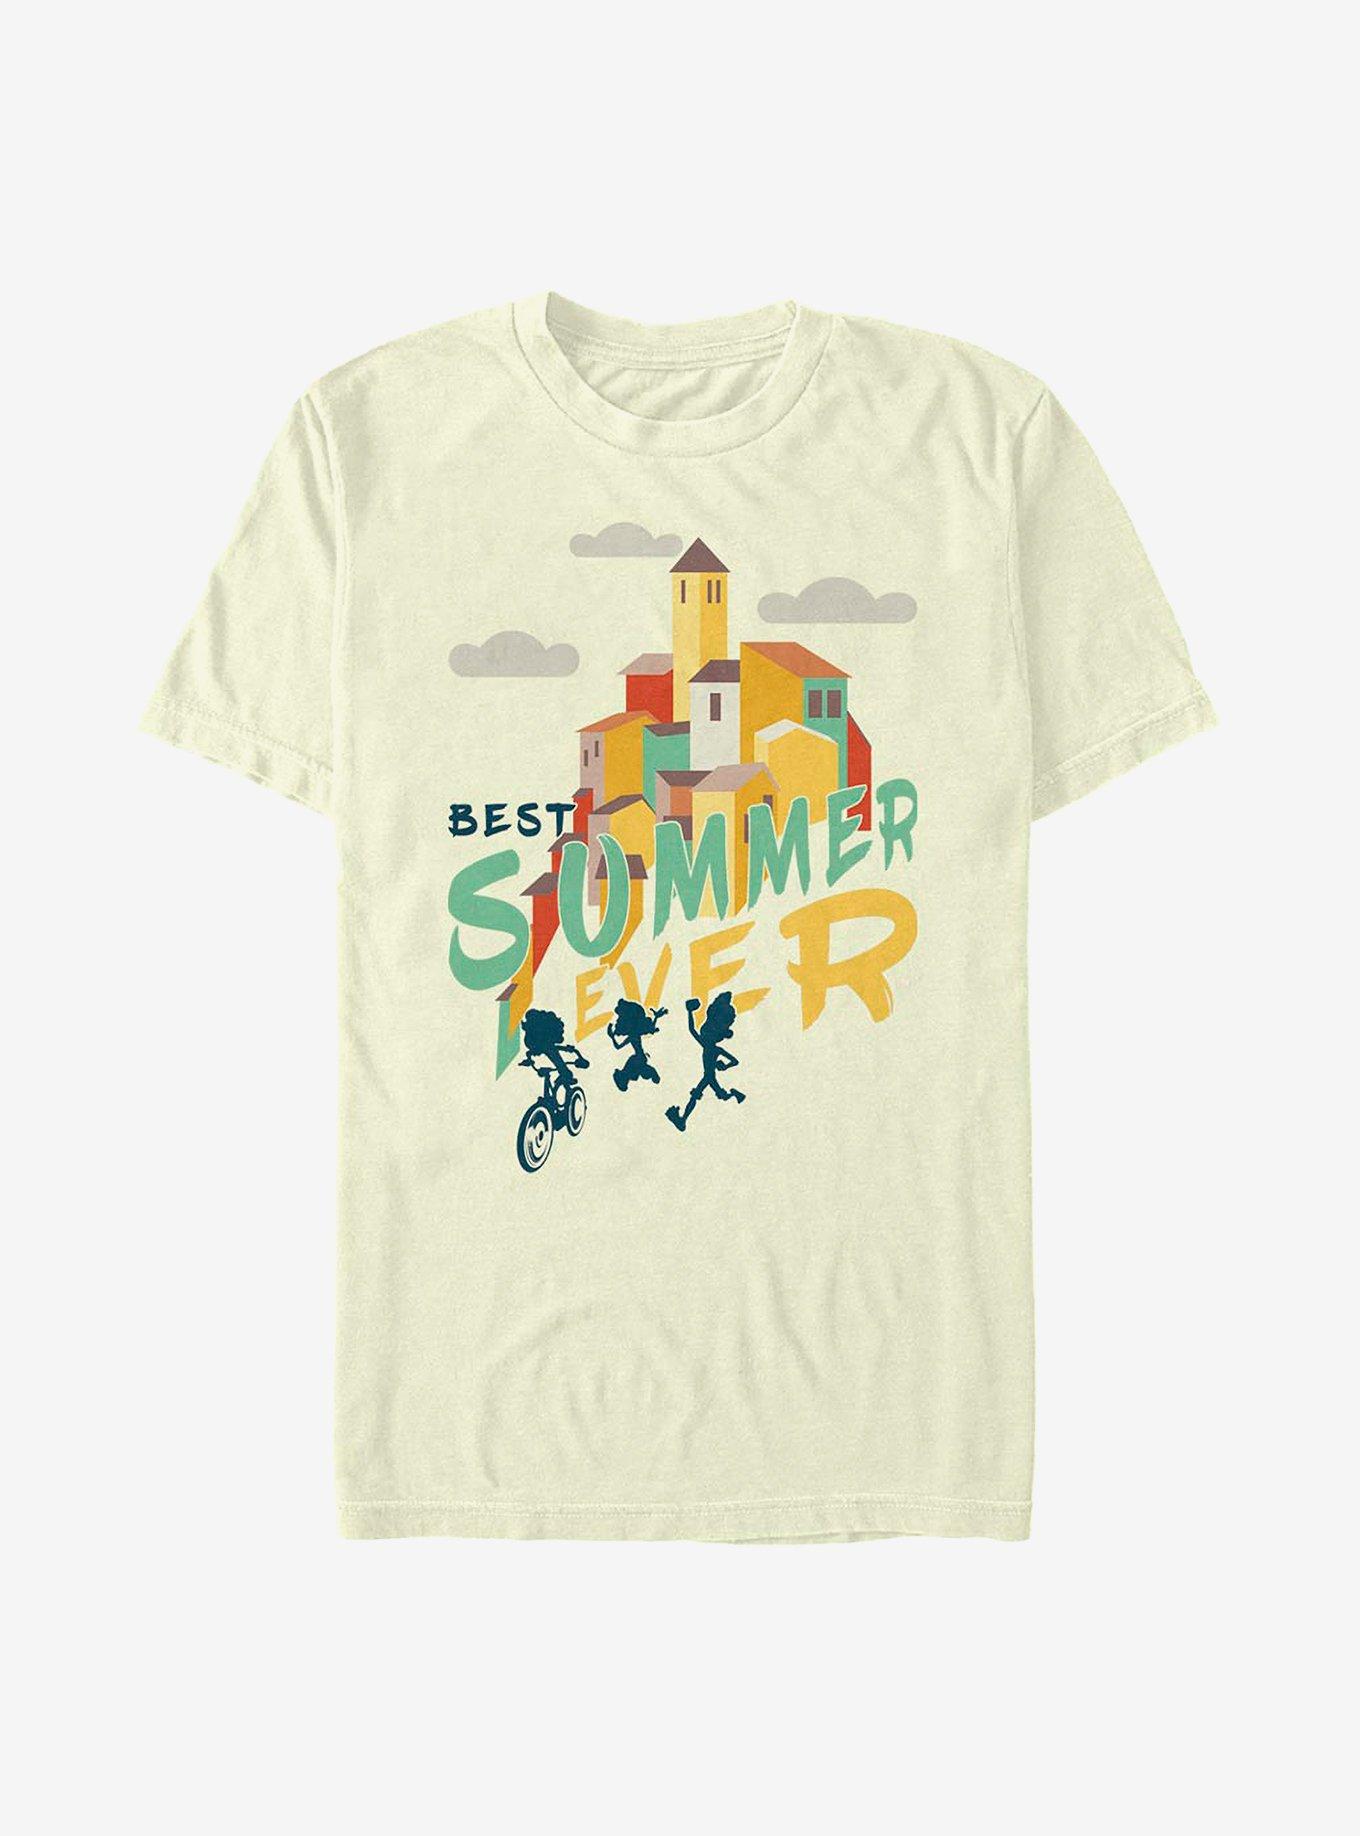 Disney Pixar Luca Best Summer Ever T-Shirt